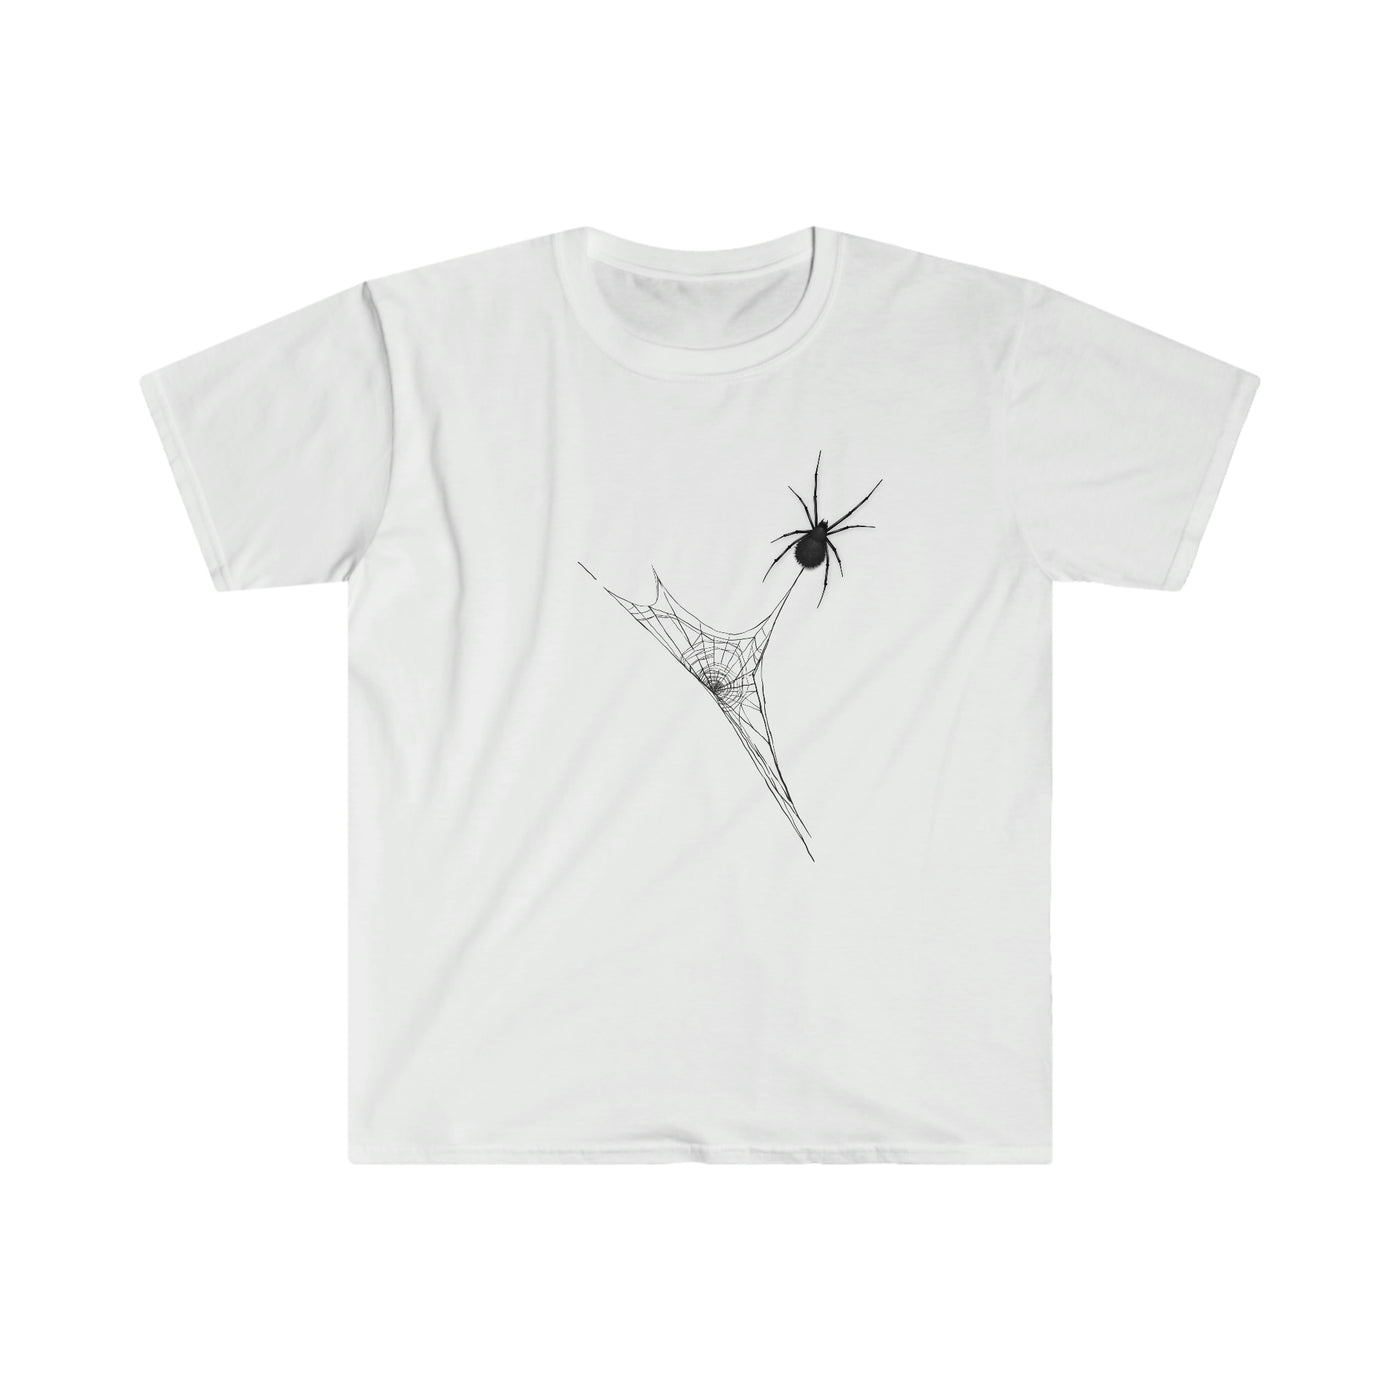 Big Black Spider Unisex T-Shirt